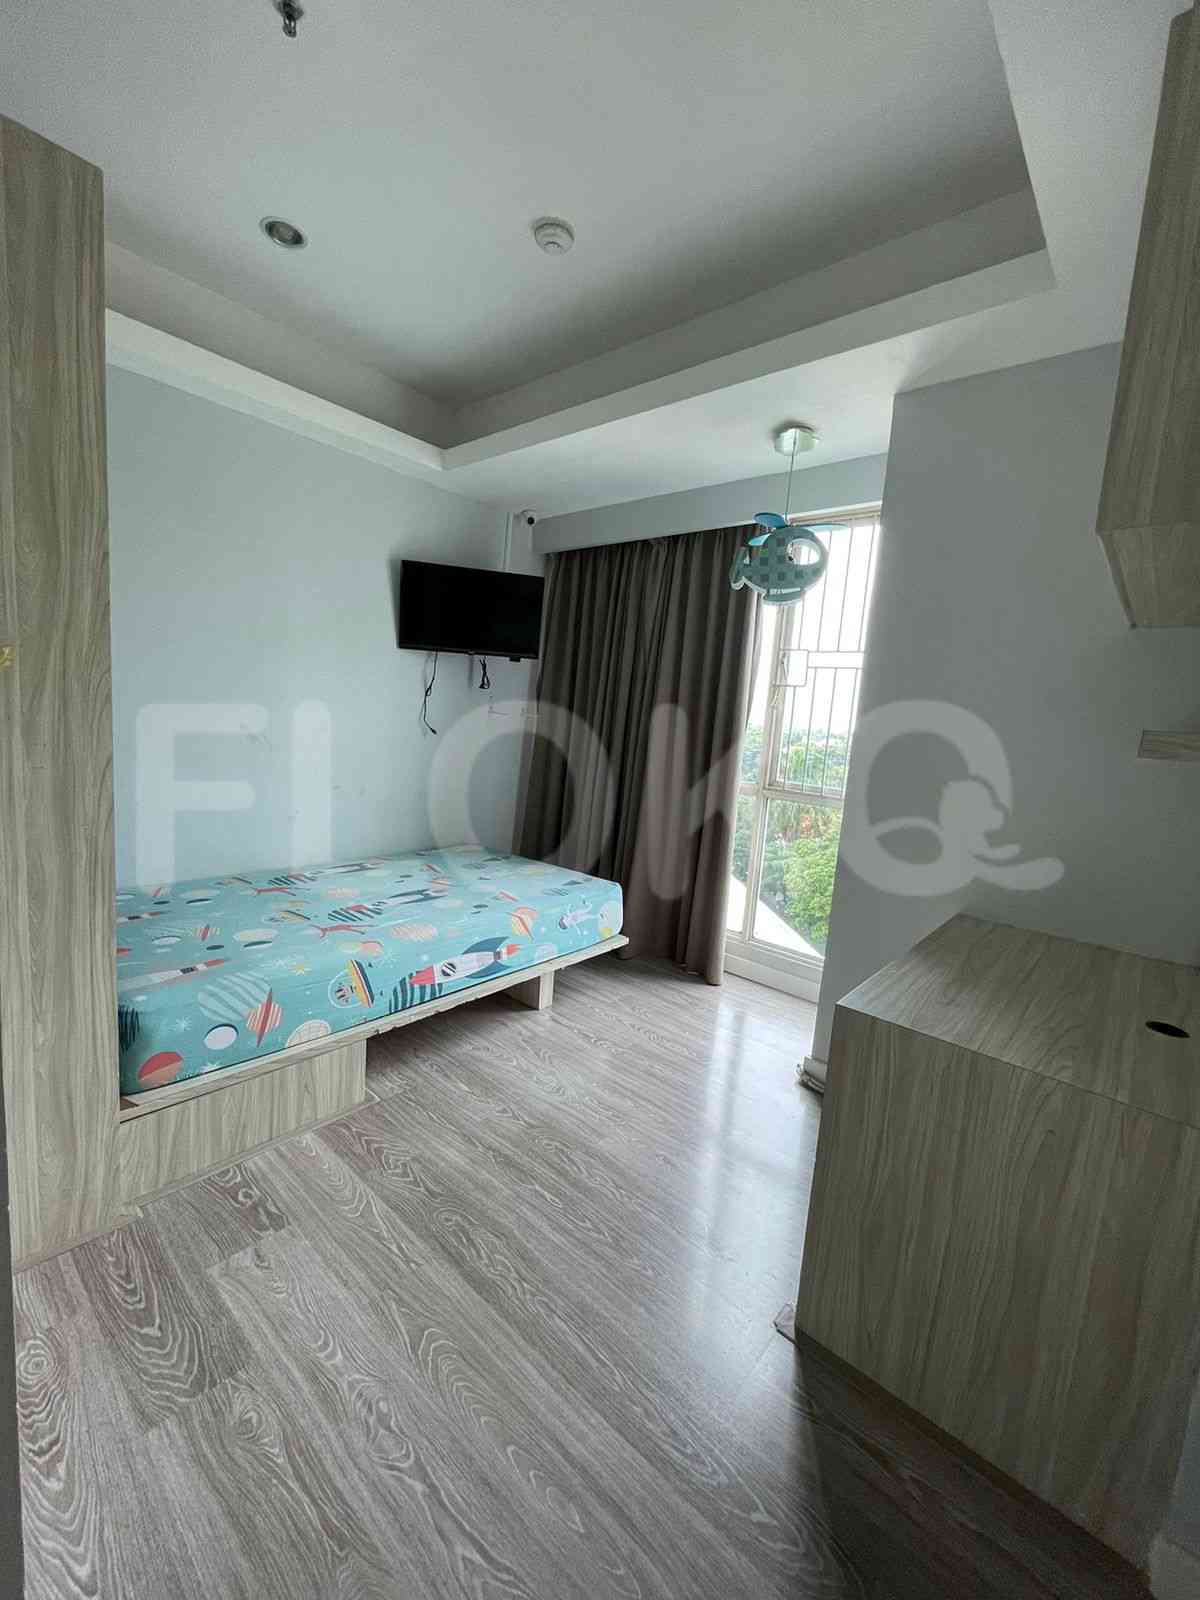 3 Bedroom on 5th Floor for Rent in Casa Grande - fte1f1 5